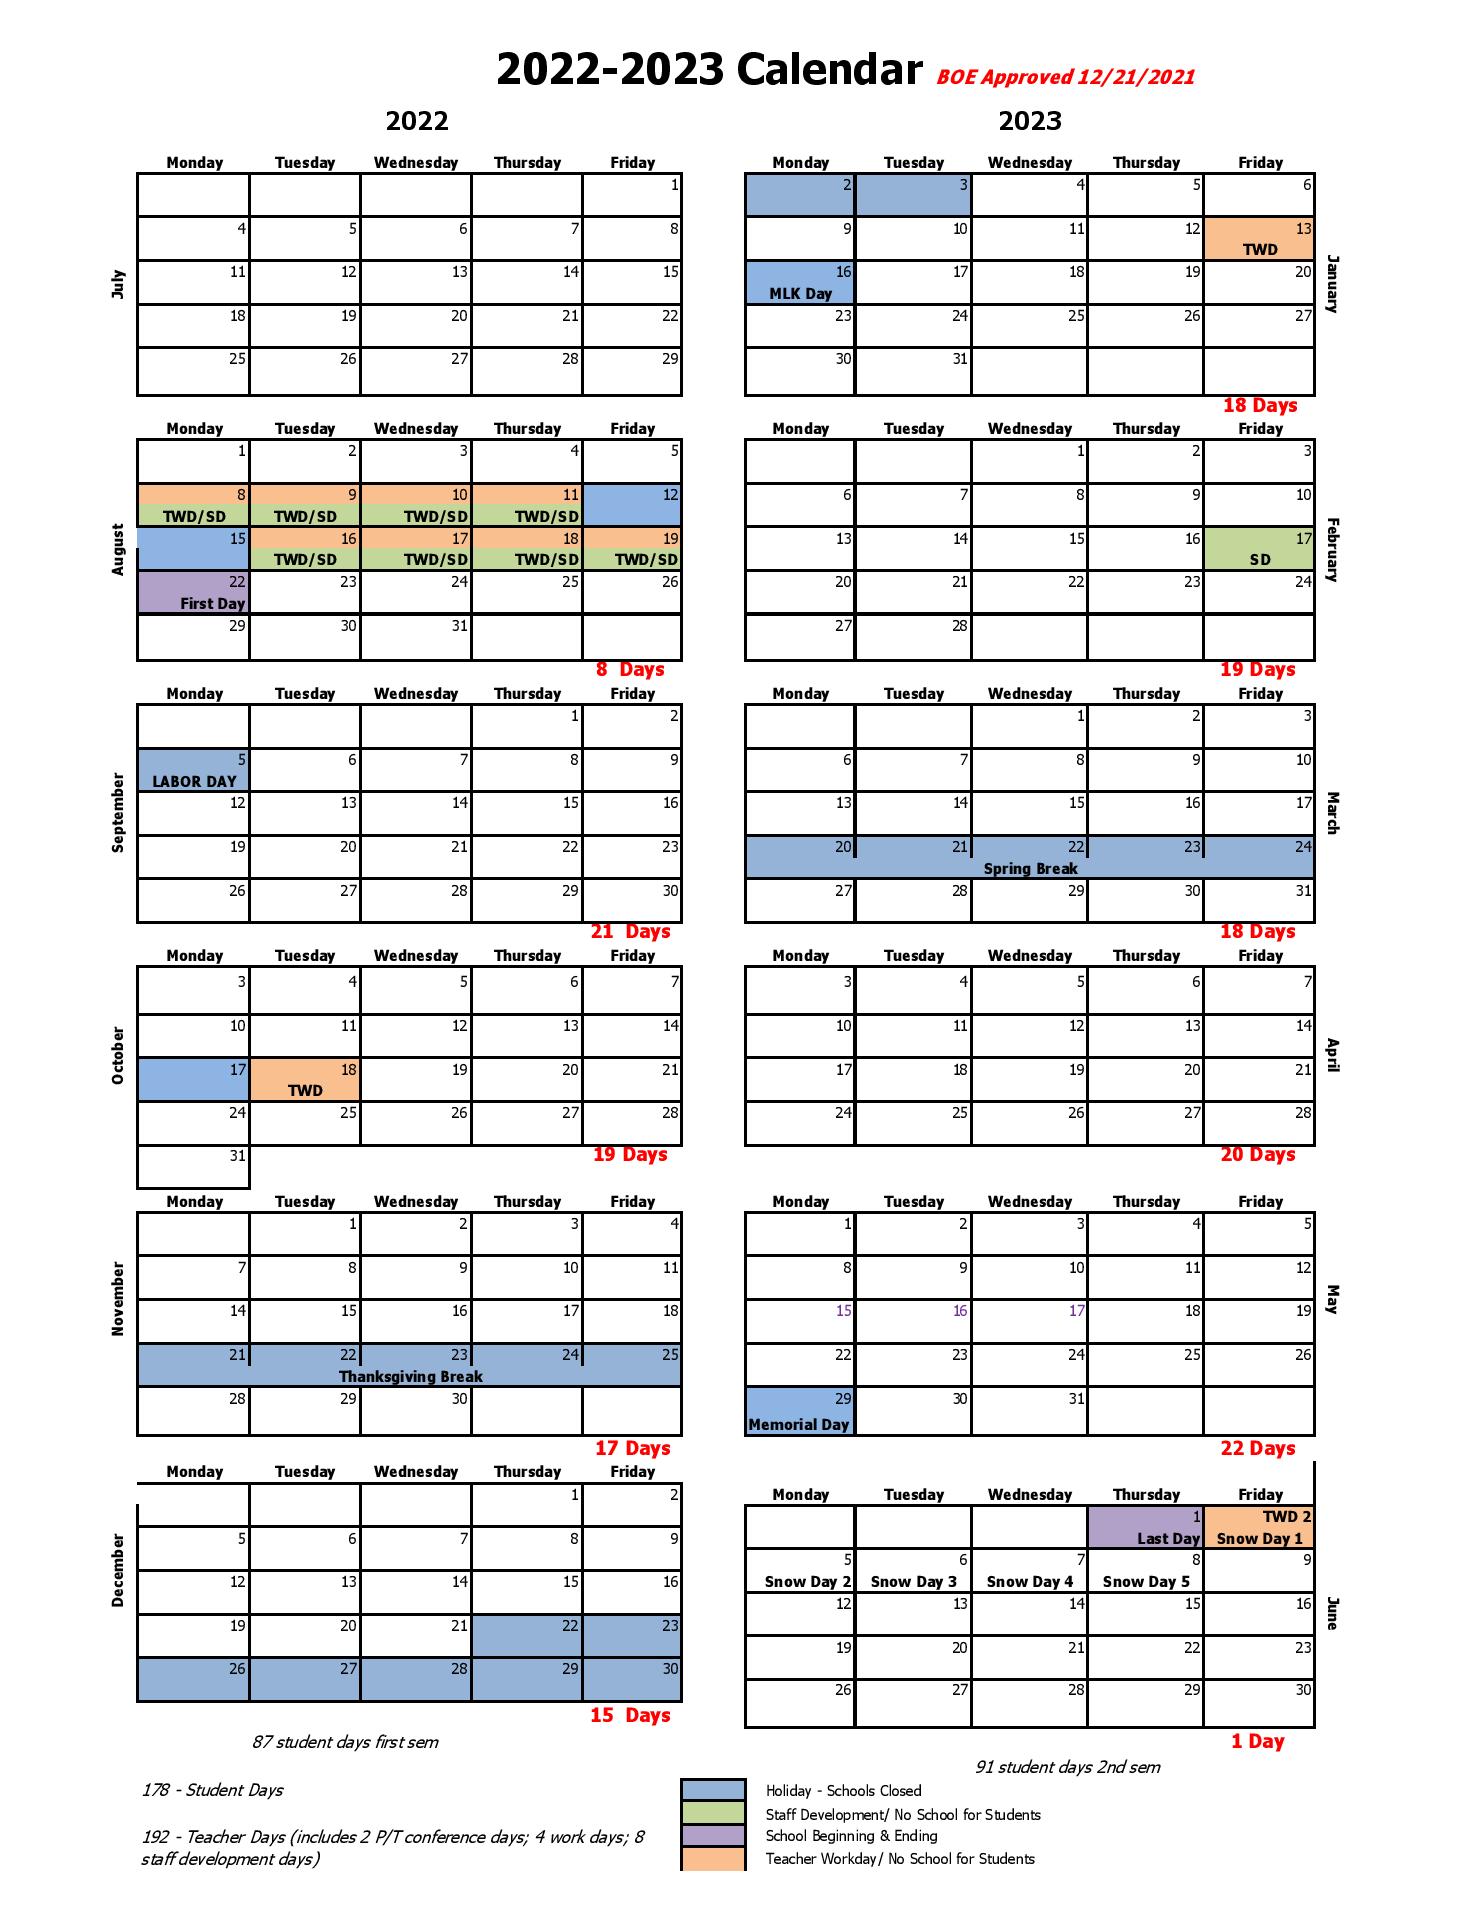 bentonville-public-schools-calendar-2022-2023-in-pdf-public-holidays